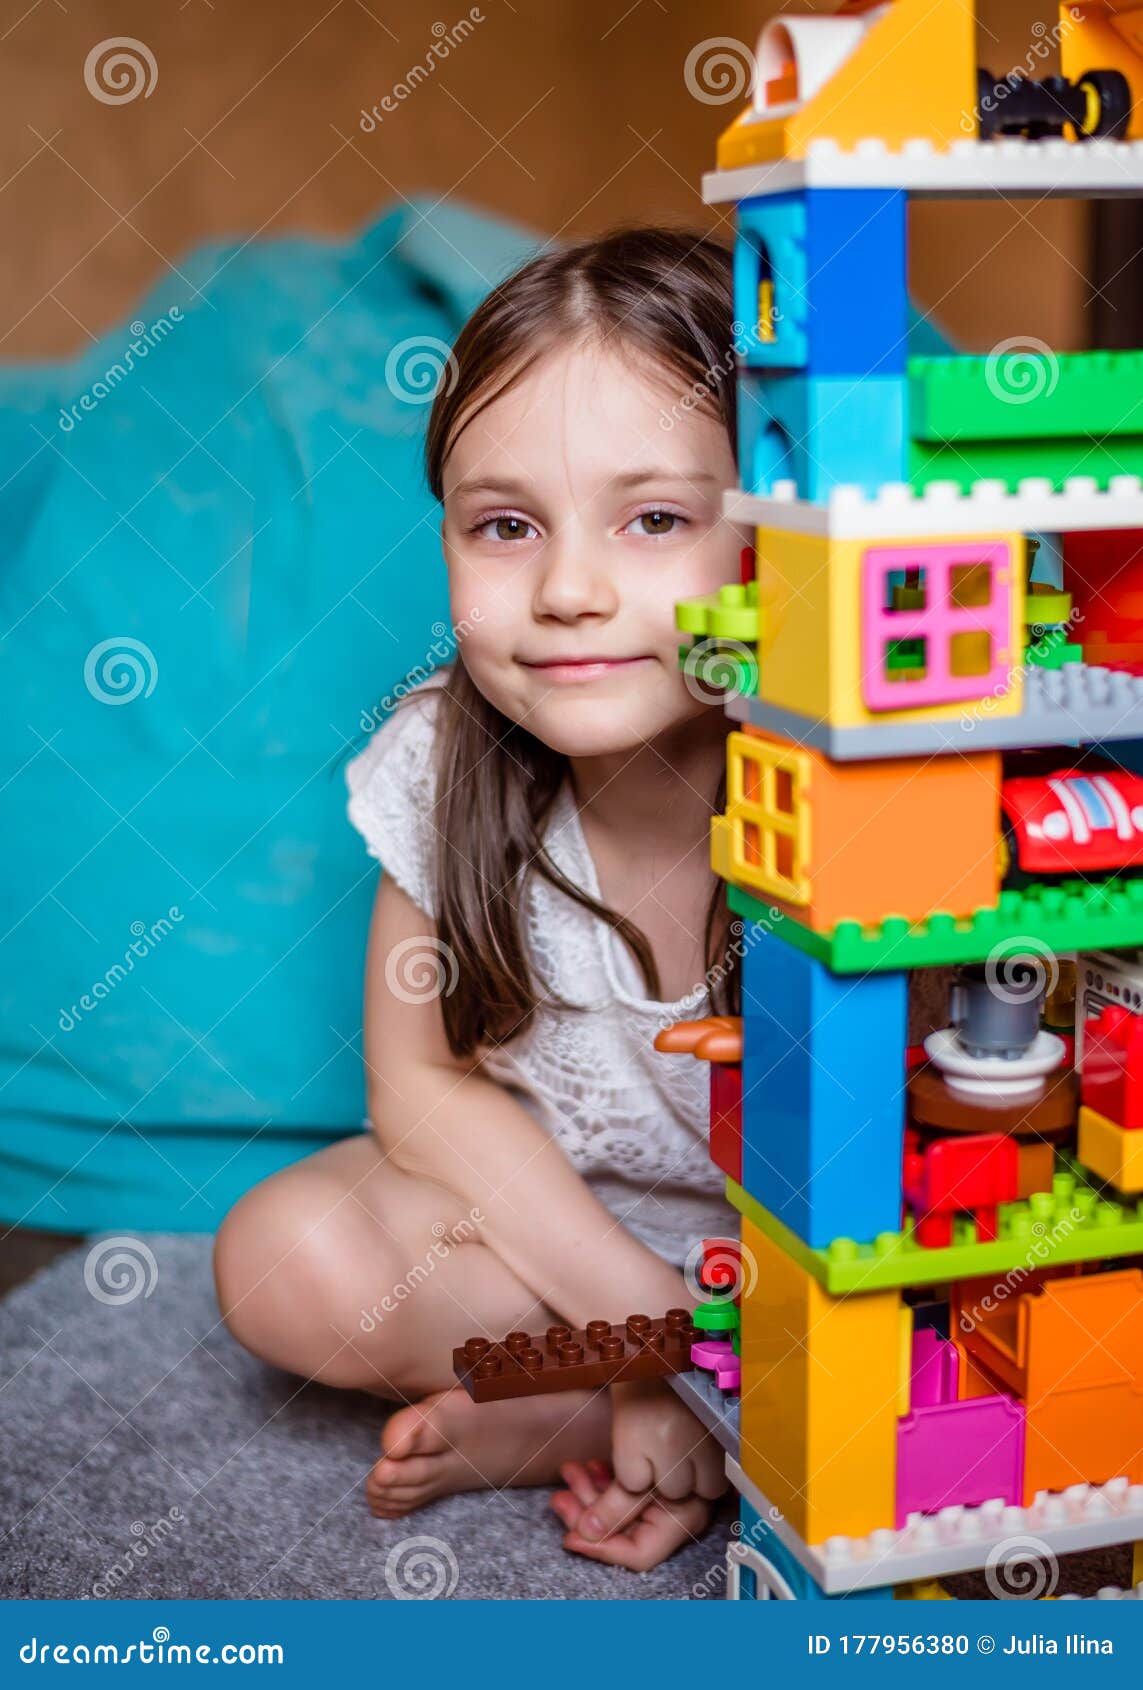 L'enfant Joue Avec Les Bloks Colorés De Lego Dans Sa Chambre. Gros Plan.  Photo stock - Image du plastique, illustration: 177956380